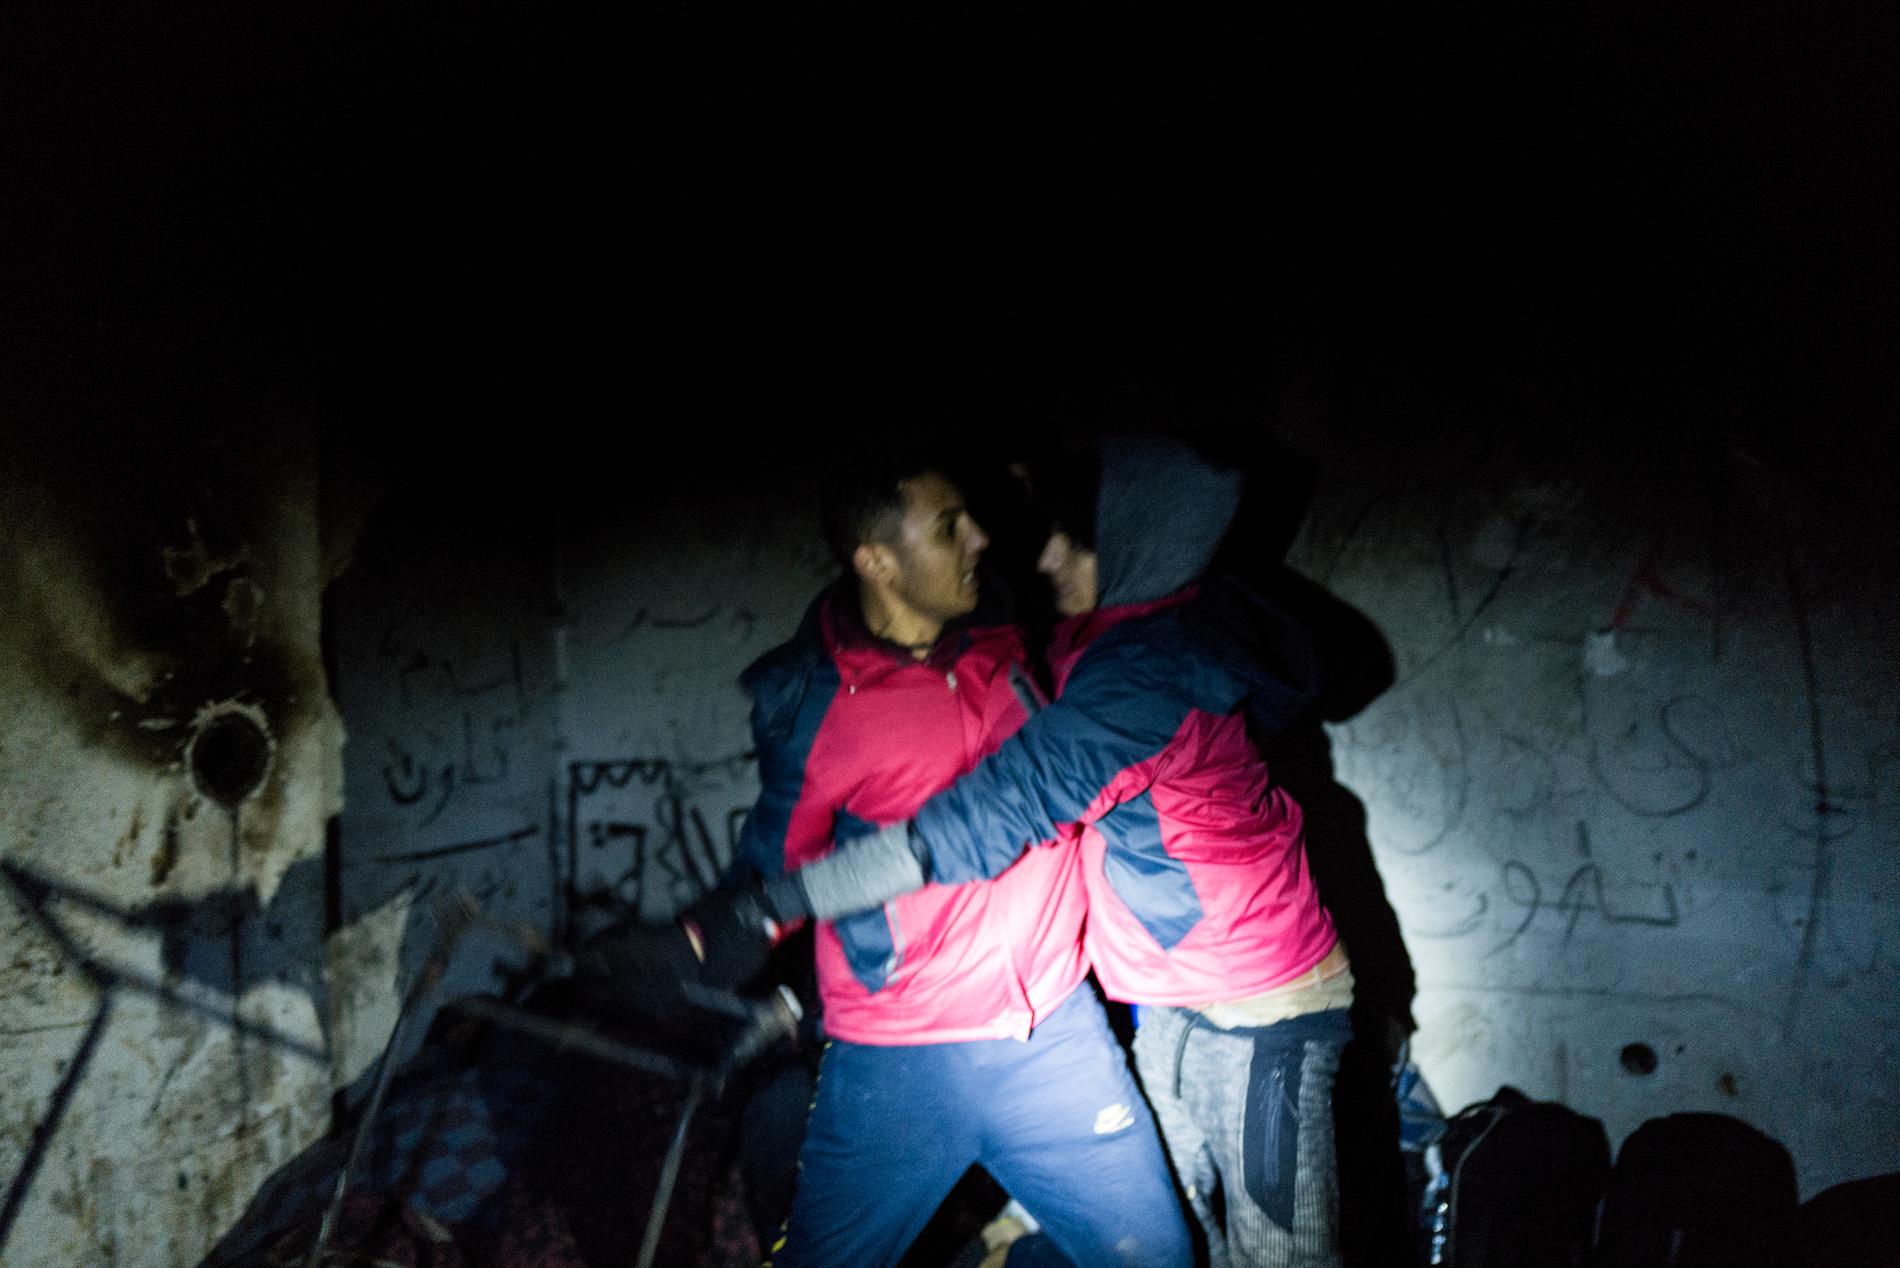 Slagsmål uppstår mellan två egyptiska killar som sökt skydd i ett övergivet hus.